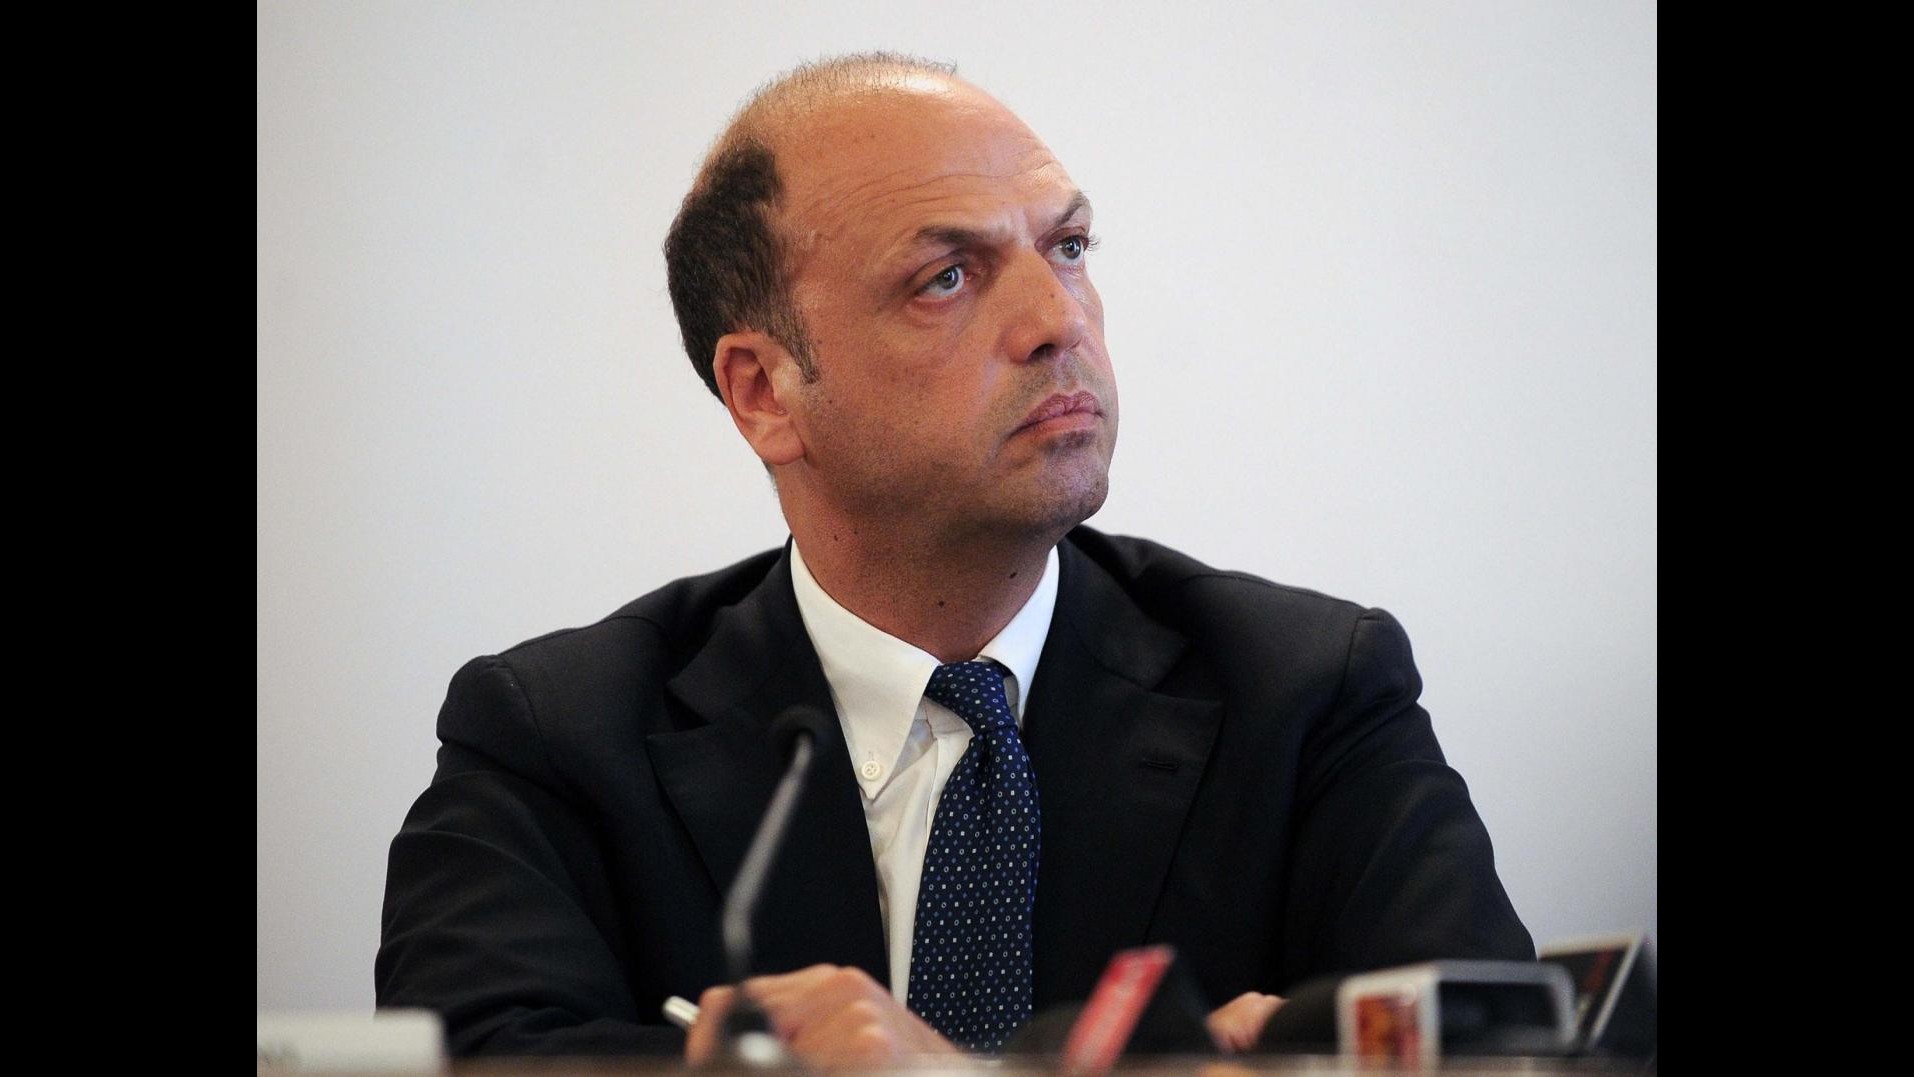 Caso Ruby, Alfano: Mai dubitato innocenza Berlusconi